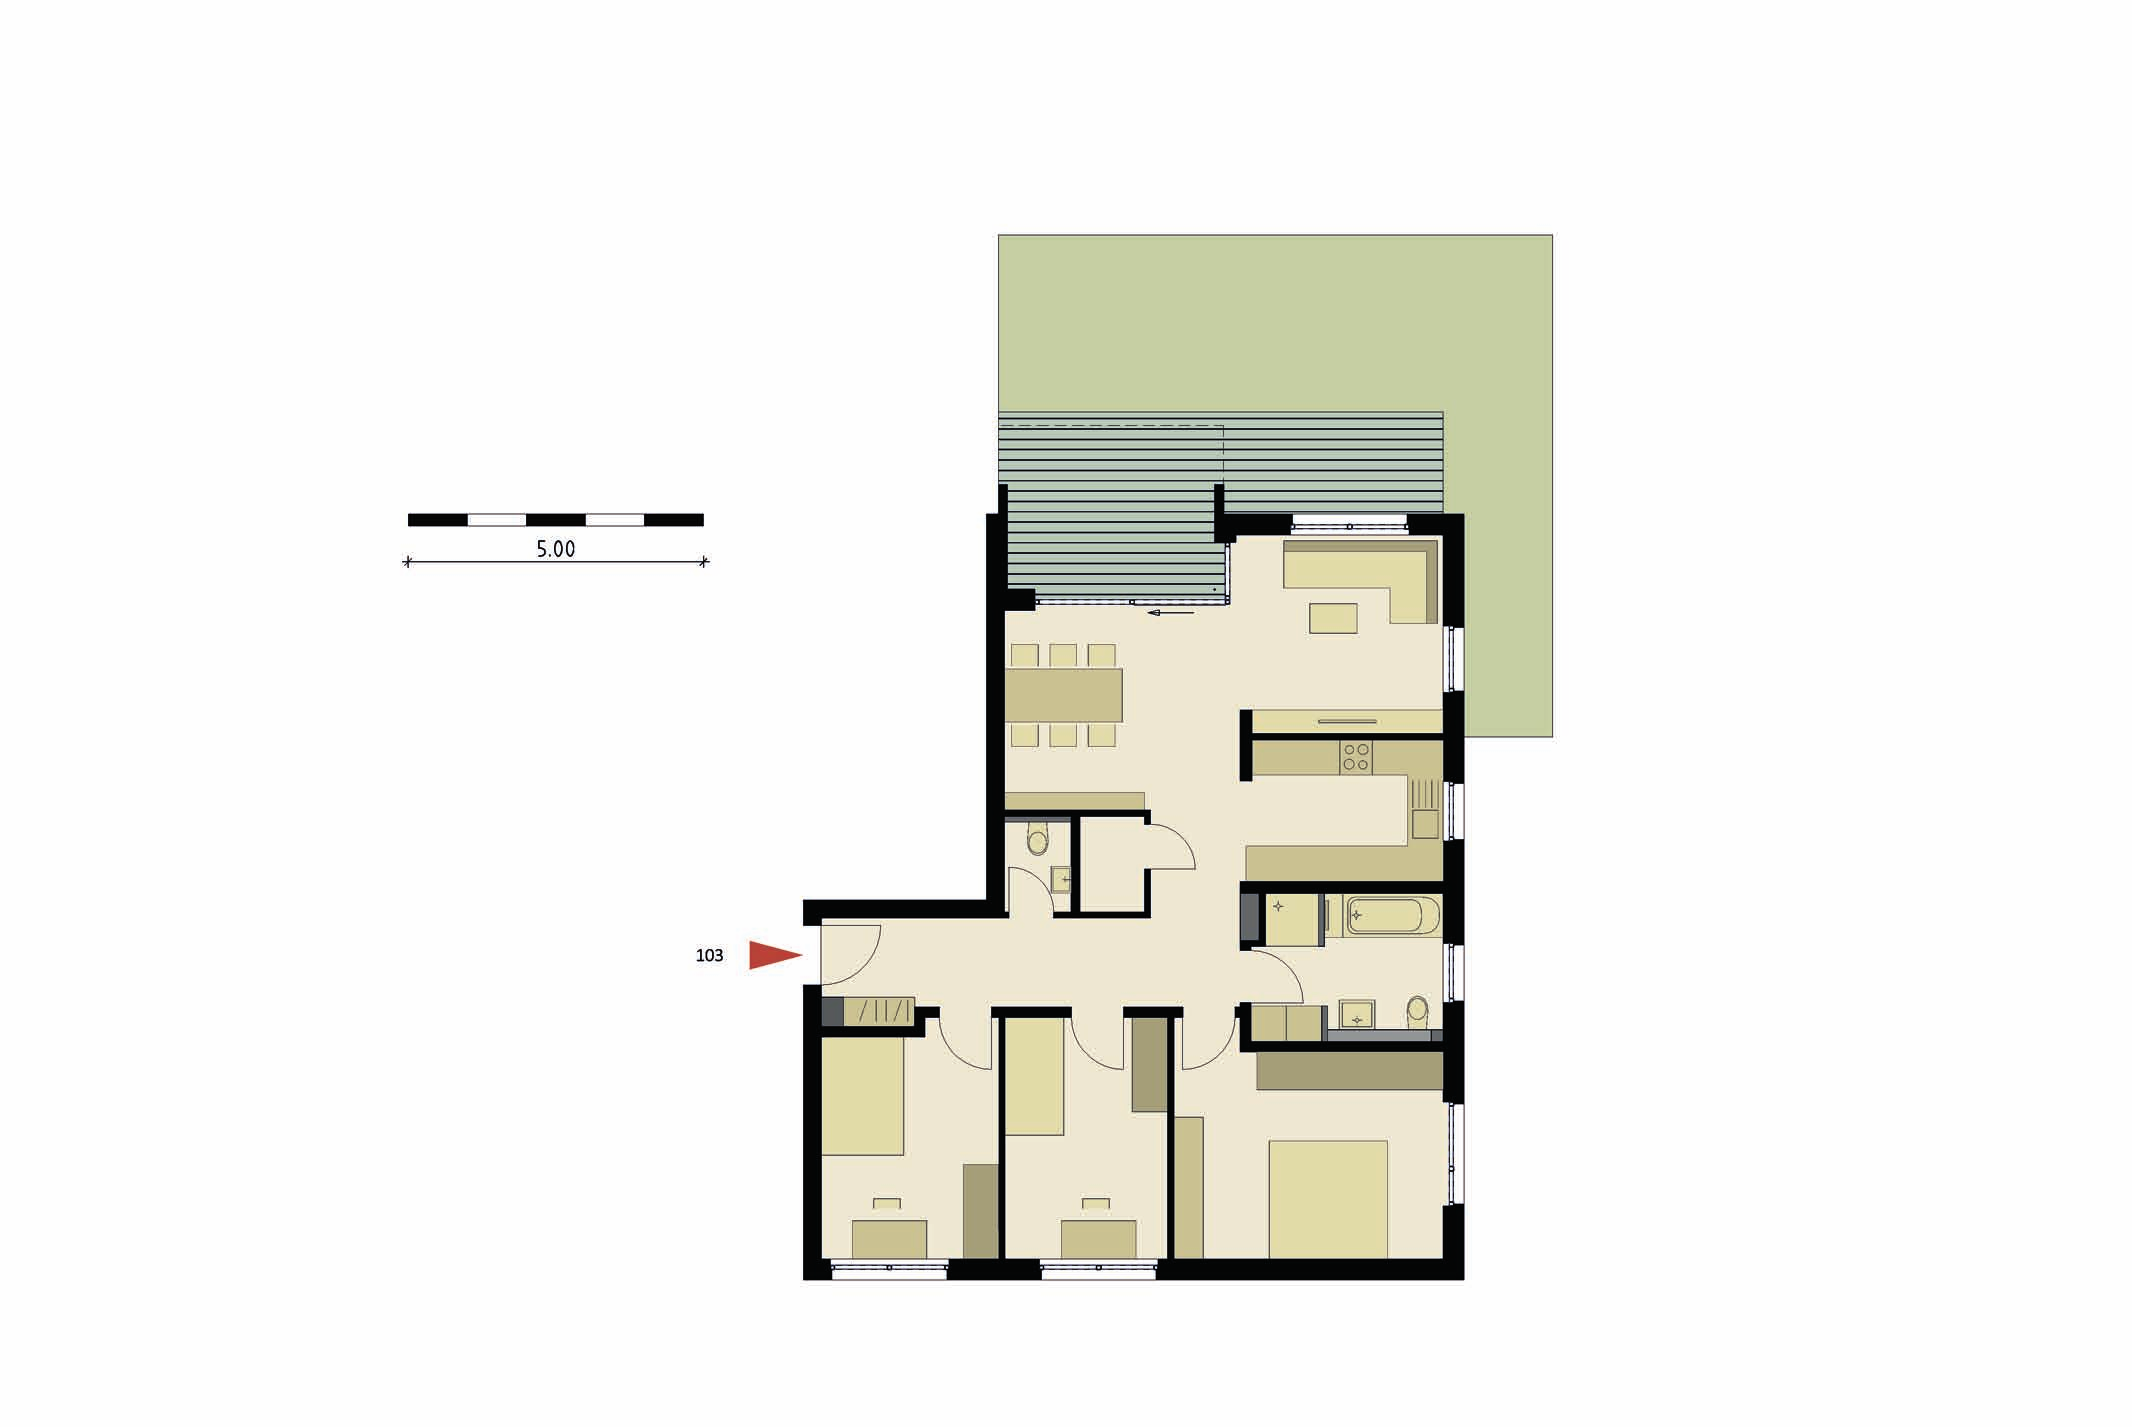 4-Zimmer Terrasse 103 EG Haus 1 Wohnfläche 105,85 m 2 raum 103 ca. 5,00 m 2 Gartenanteil ca.